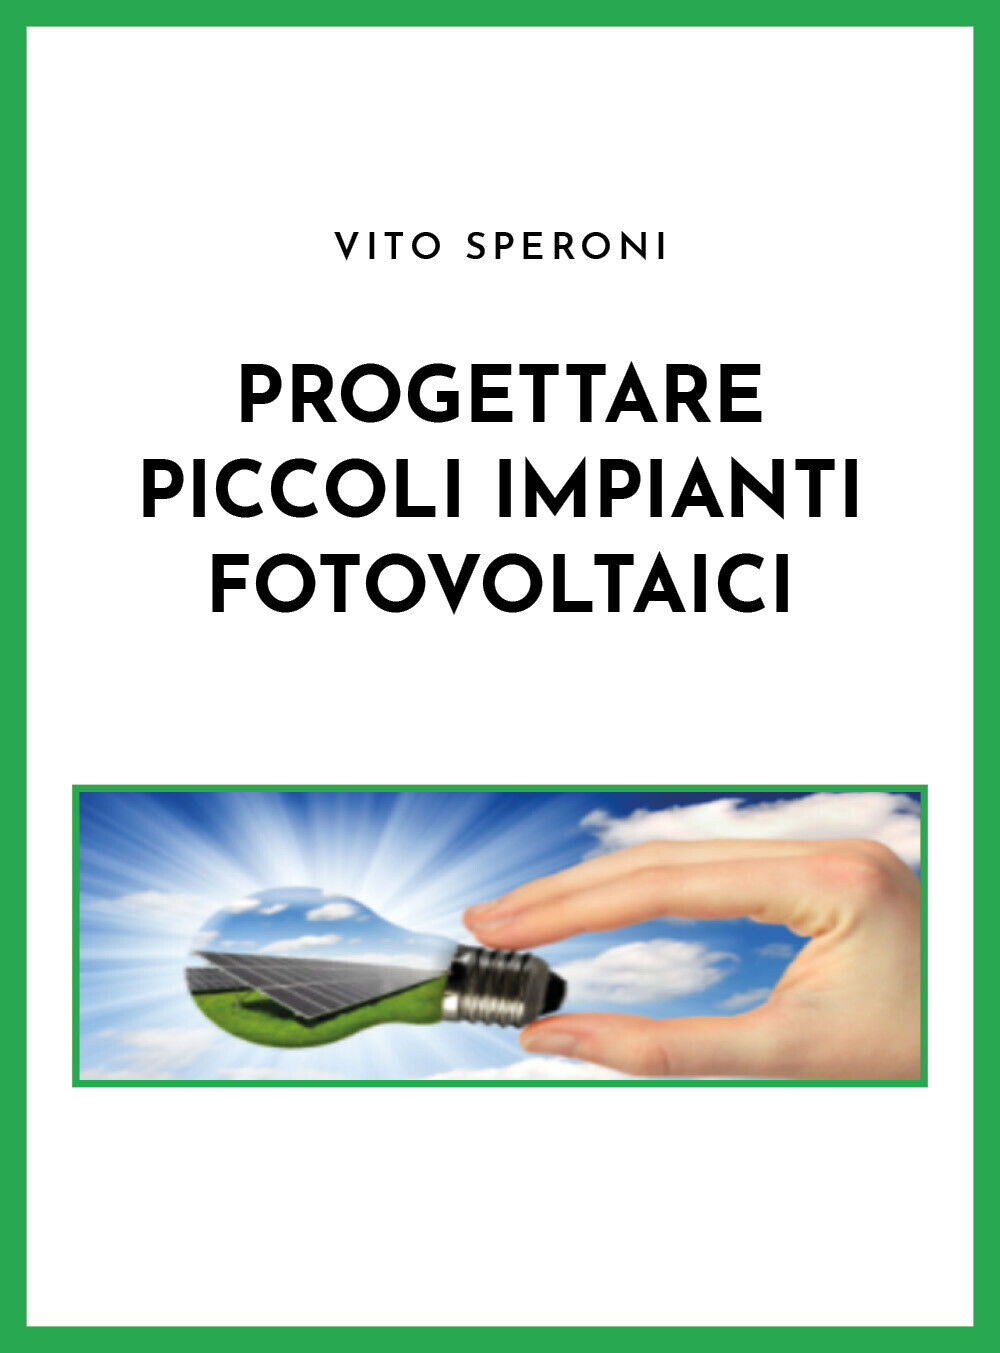 Progettare piccoli impianti fotovoltaici di Vito Speroni,  2021,  Youcanprint libro usato